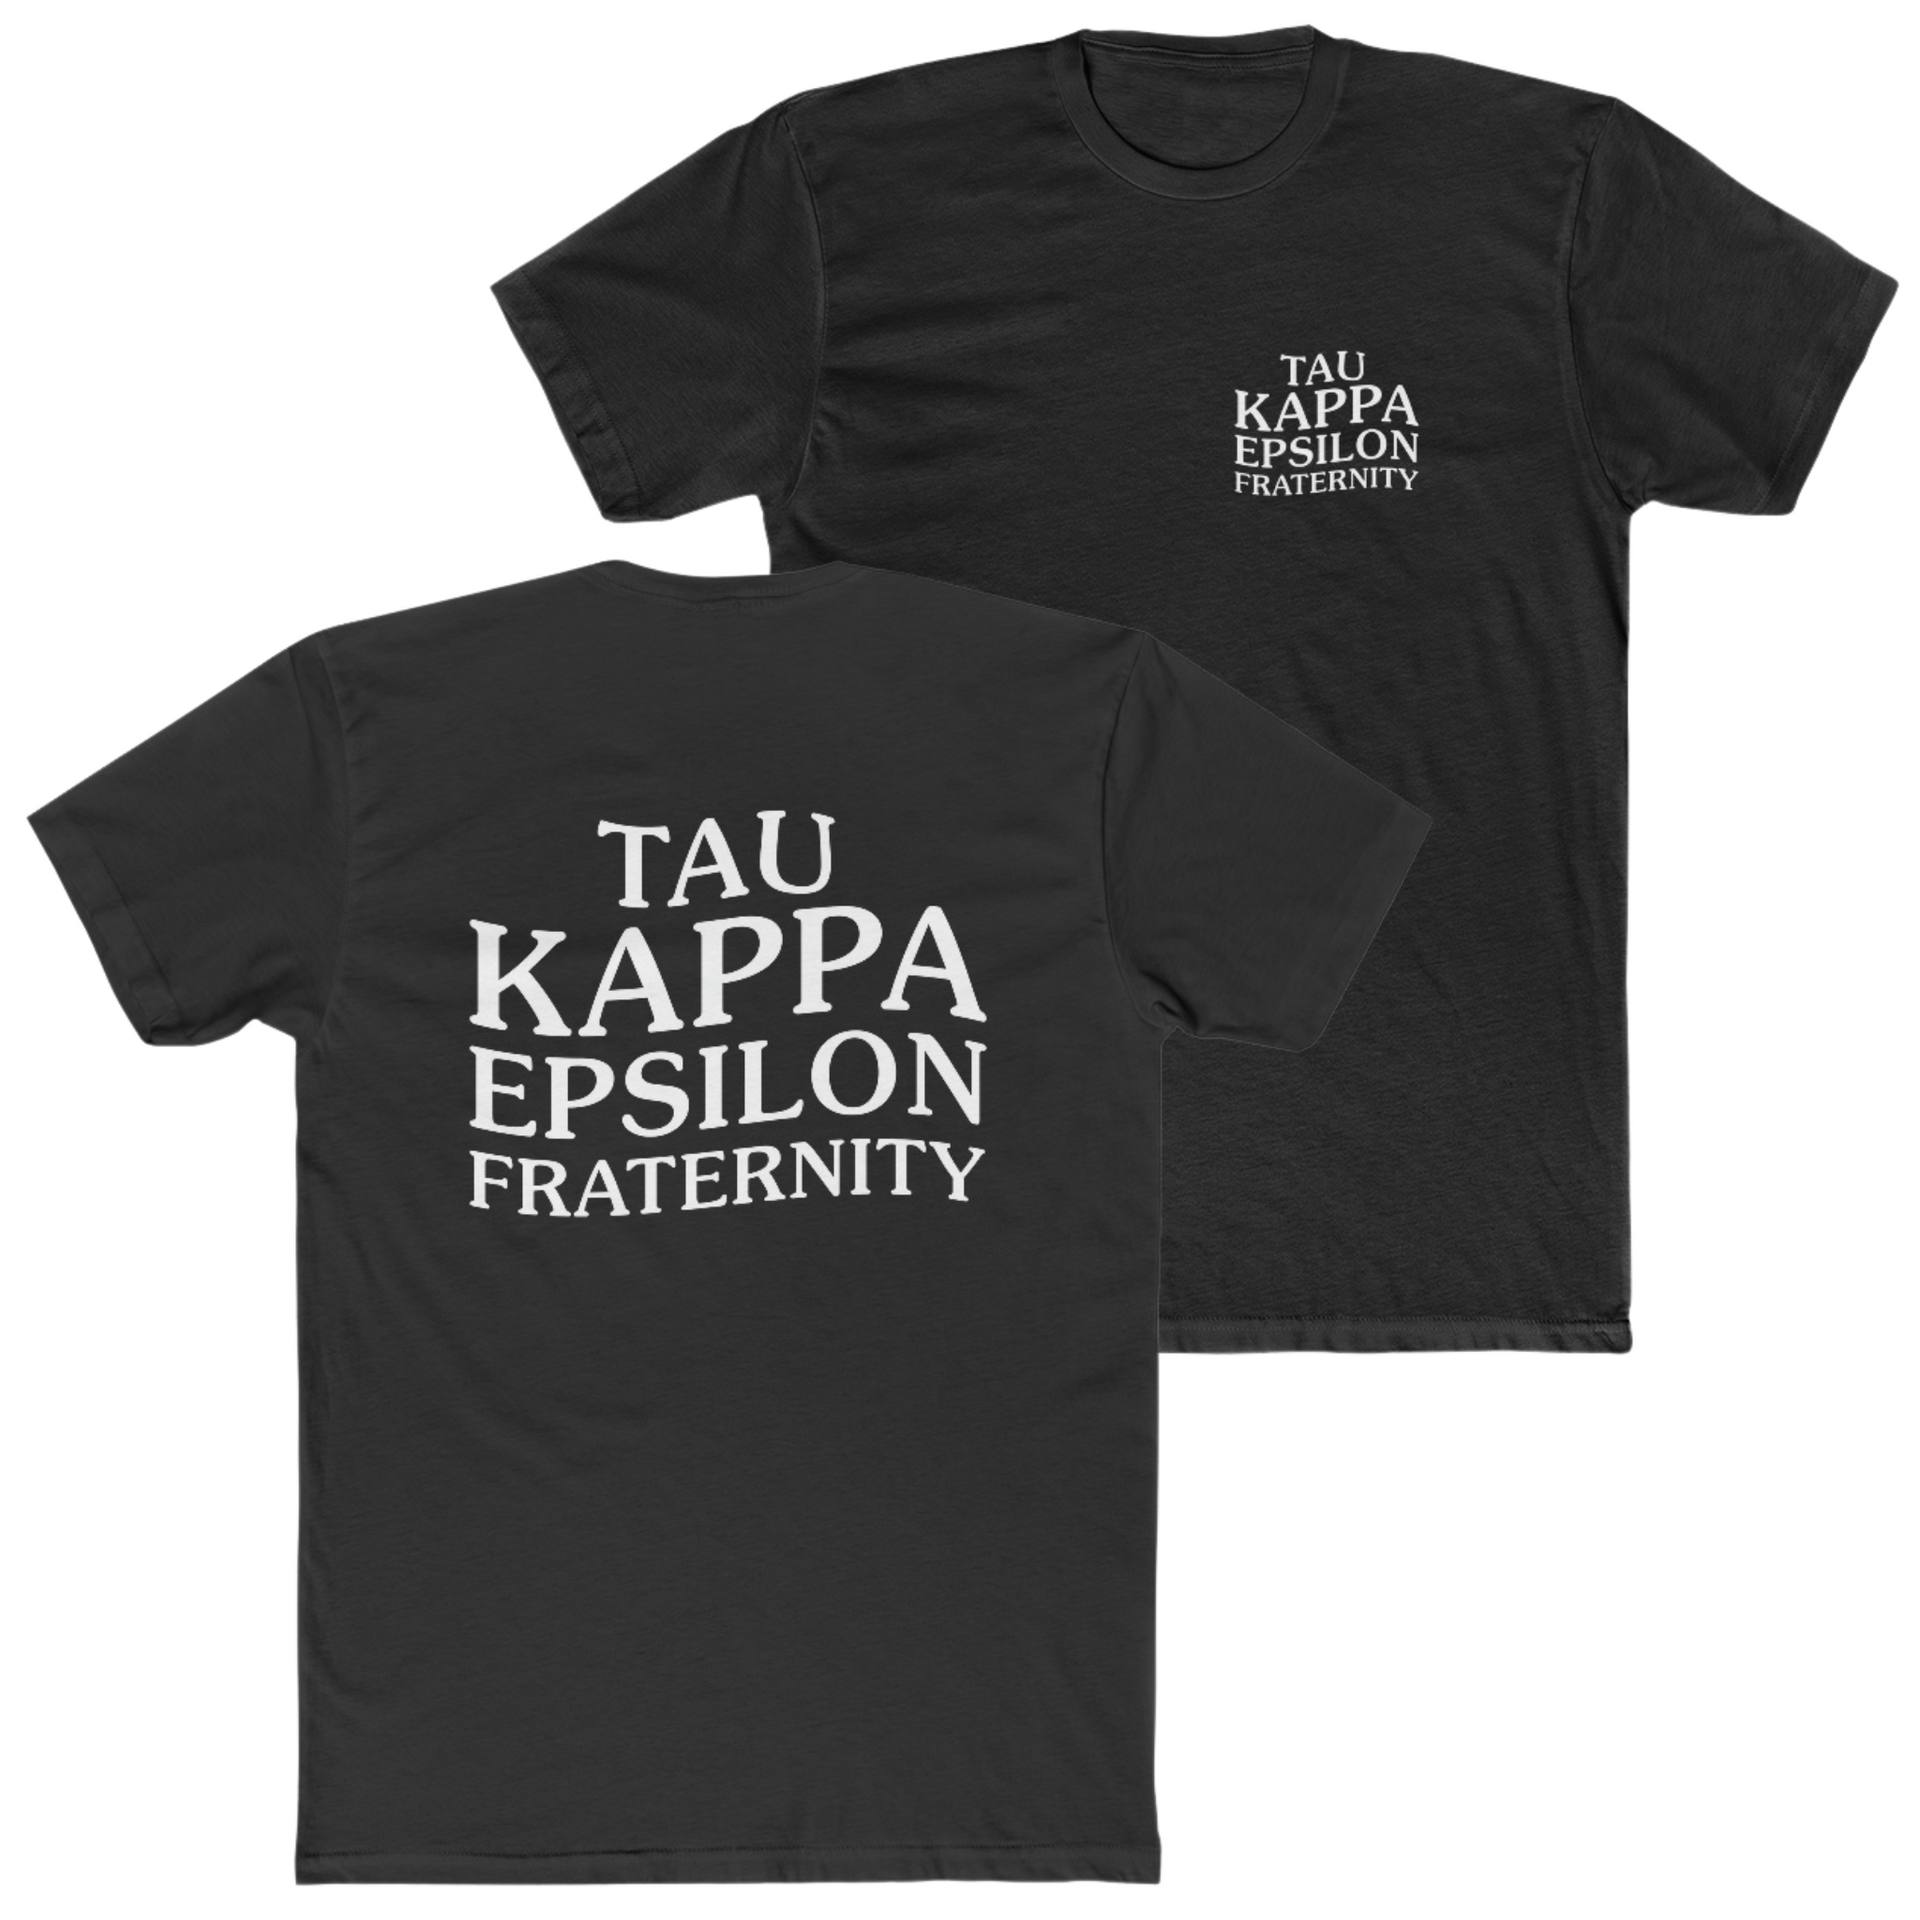 Black Tau Kappa Epsilon Graphic T-Shirt | TKE Social Club | TKE Clothing and Merchandise